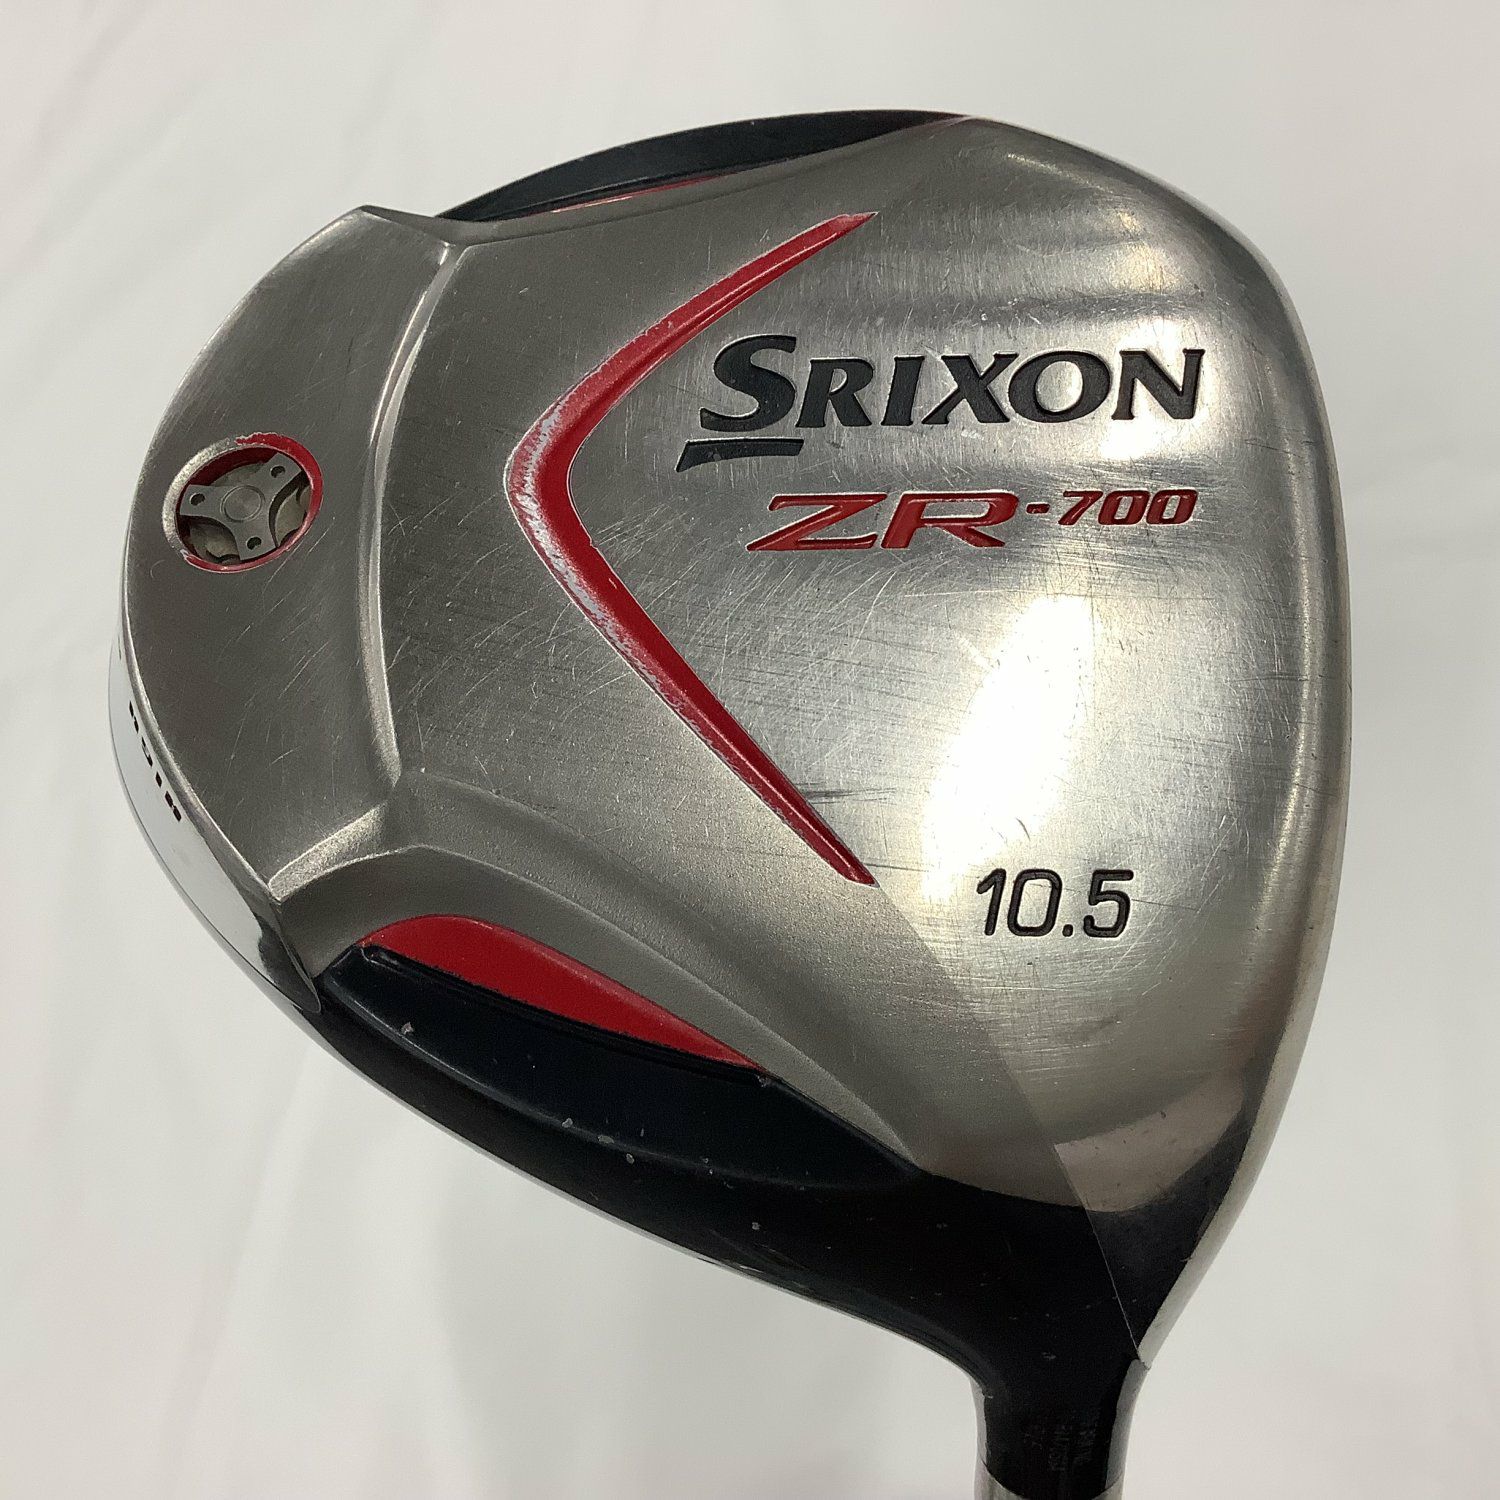 良品】SRIXON スリクソン Z565 ZR-700 メンズゴルフセット - クラブ